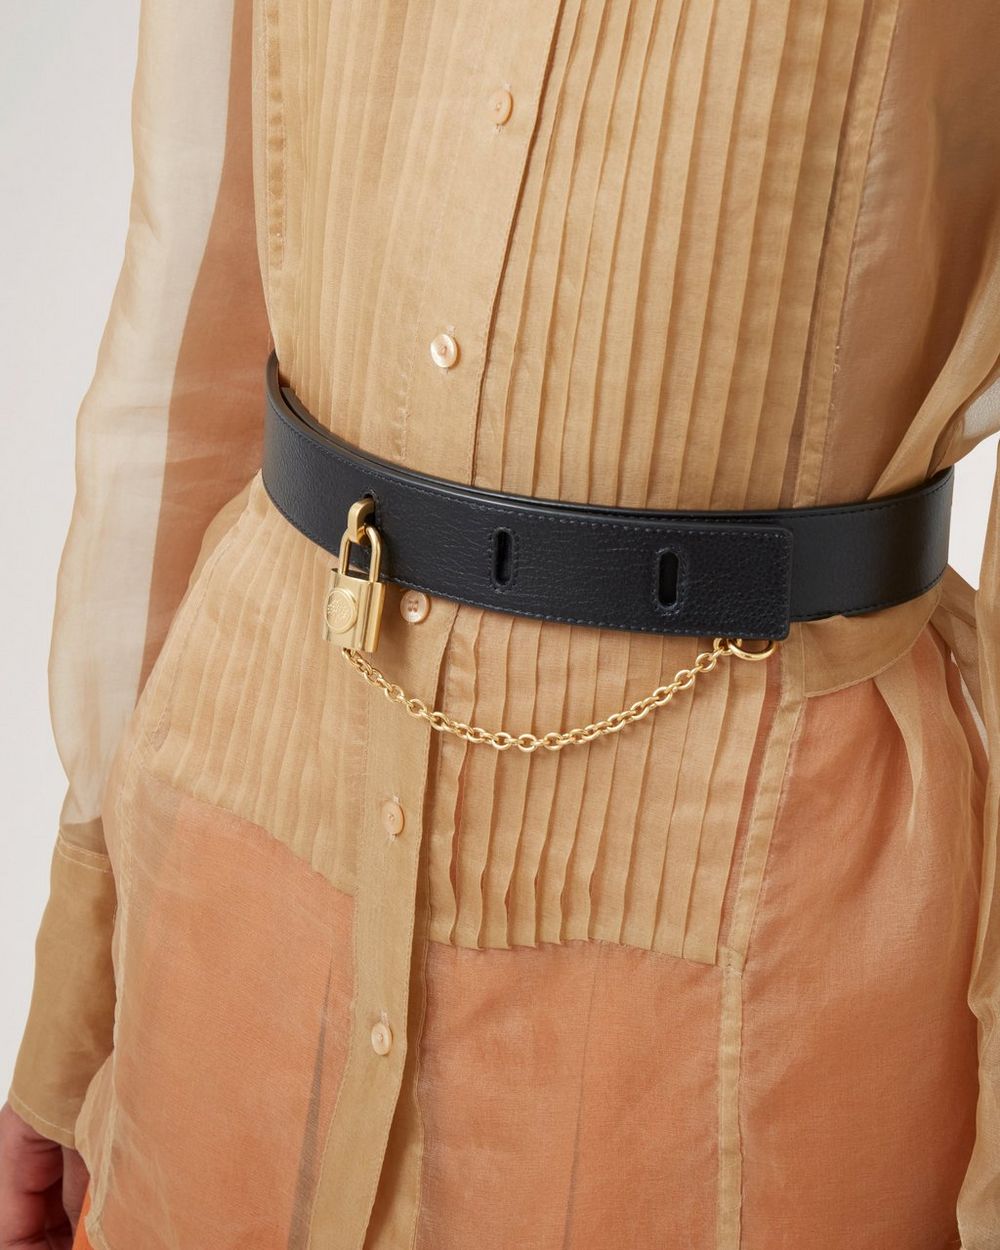 Monogram 'S Lock' Belt Pouch, Authentic & Vintage